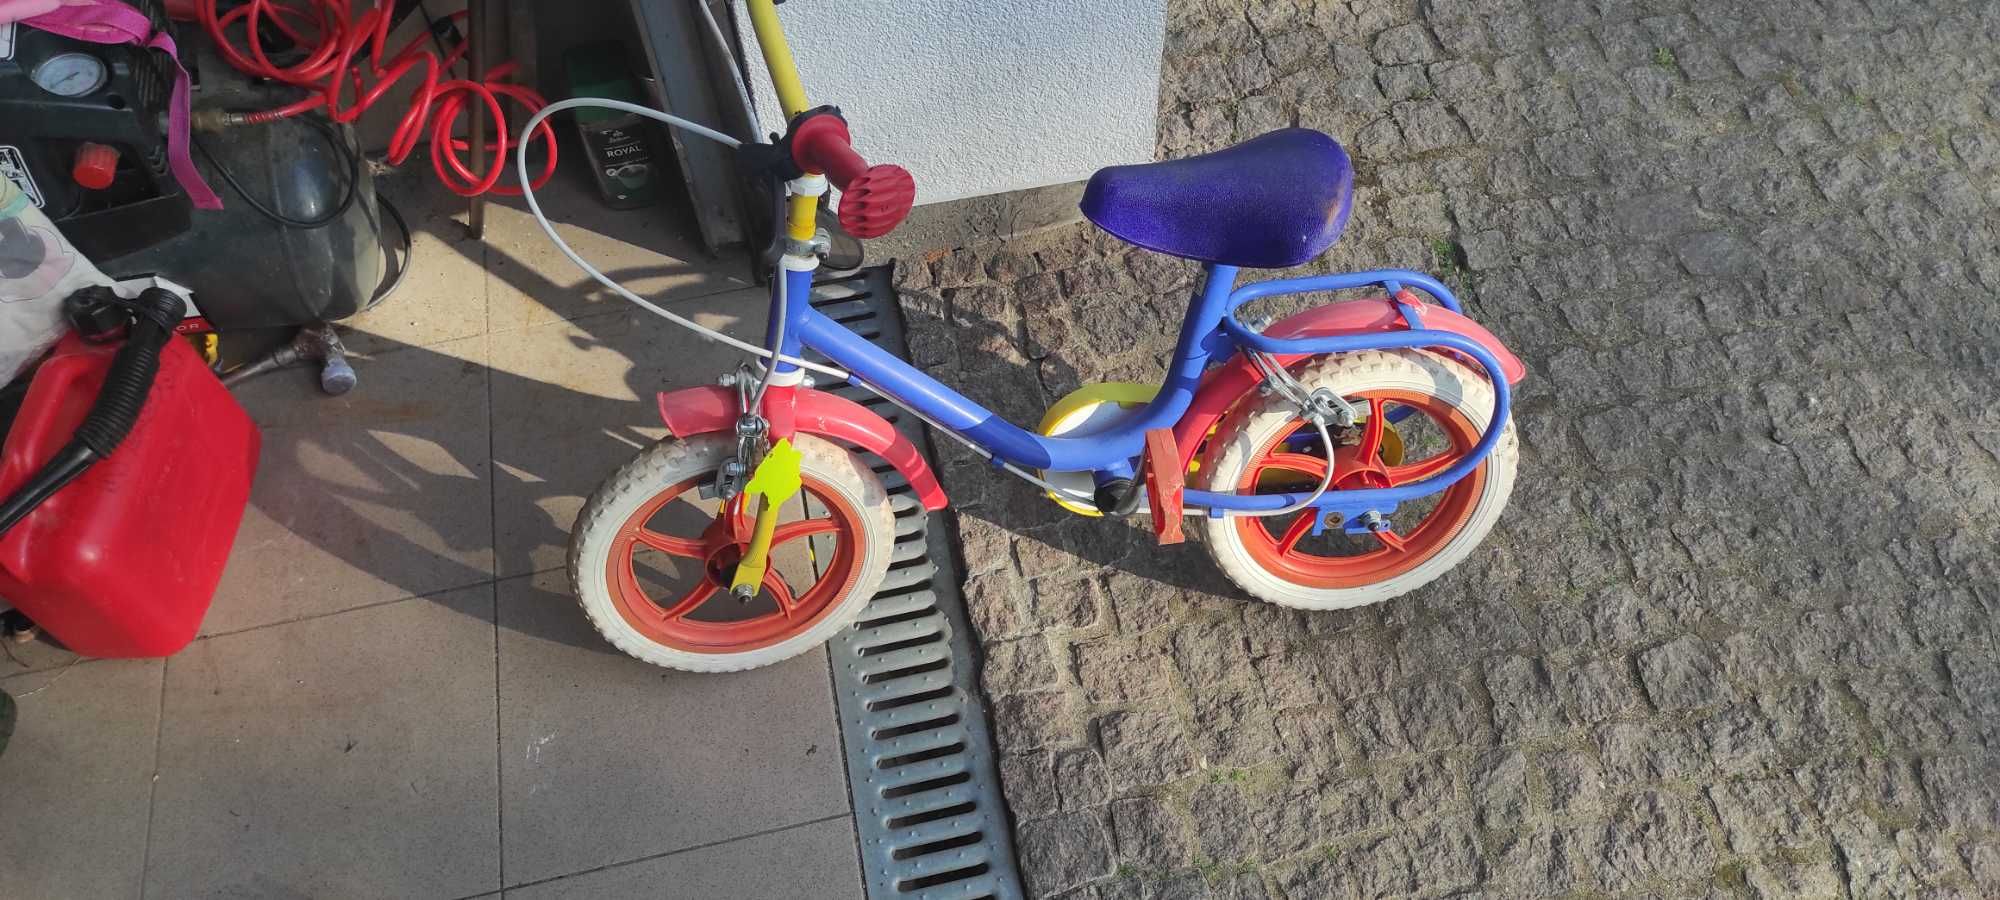 Rowerki biegowe dla dzieci i 2 normalne rowerki.